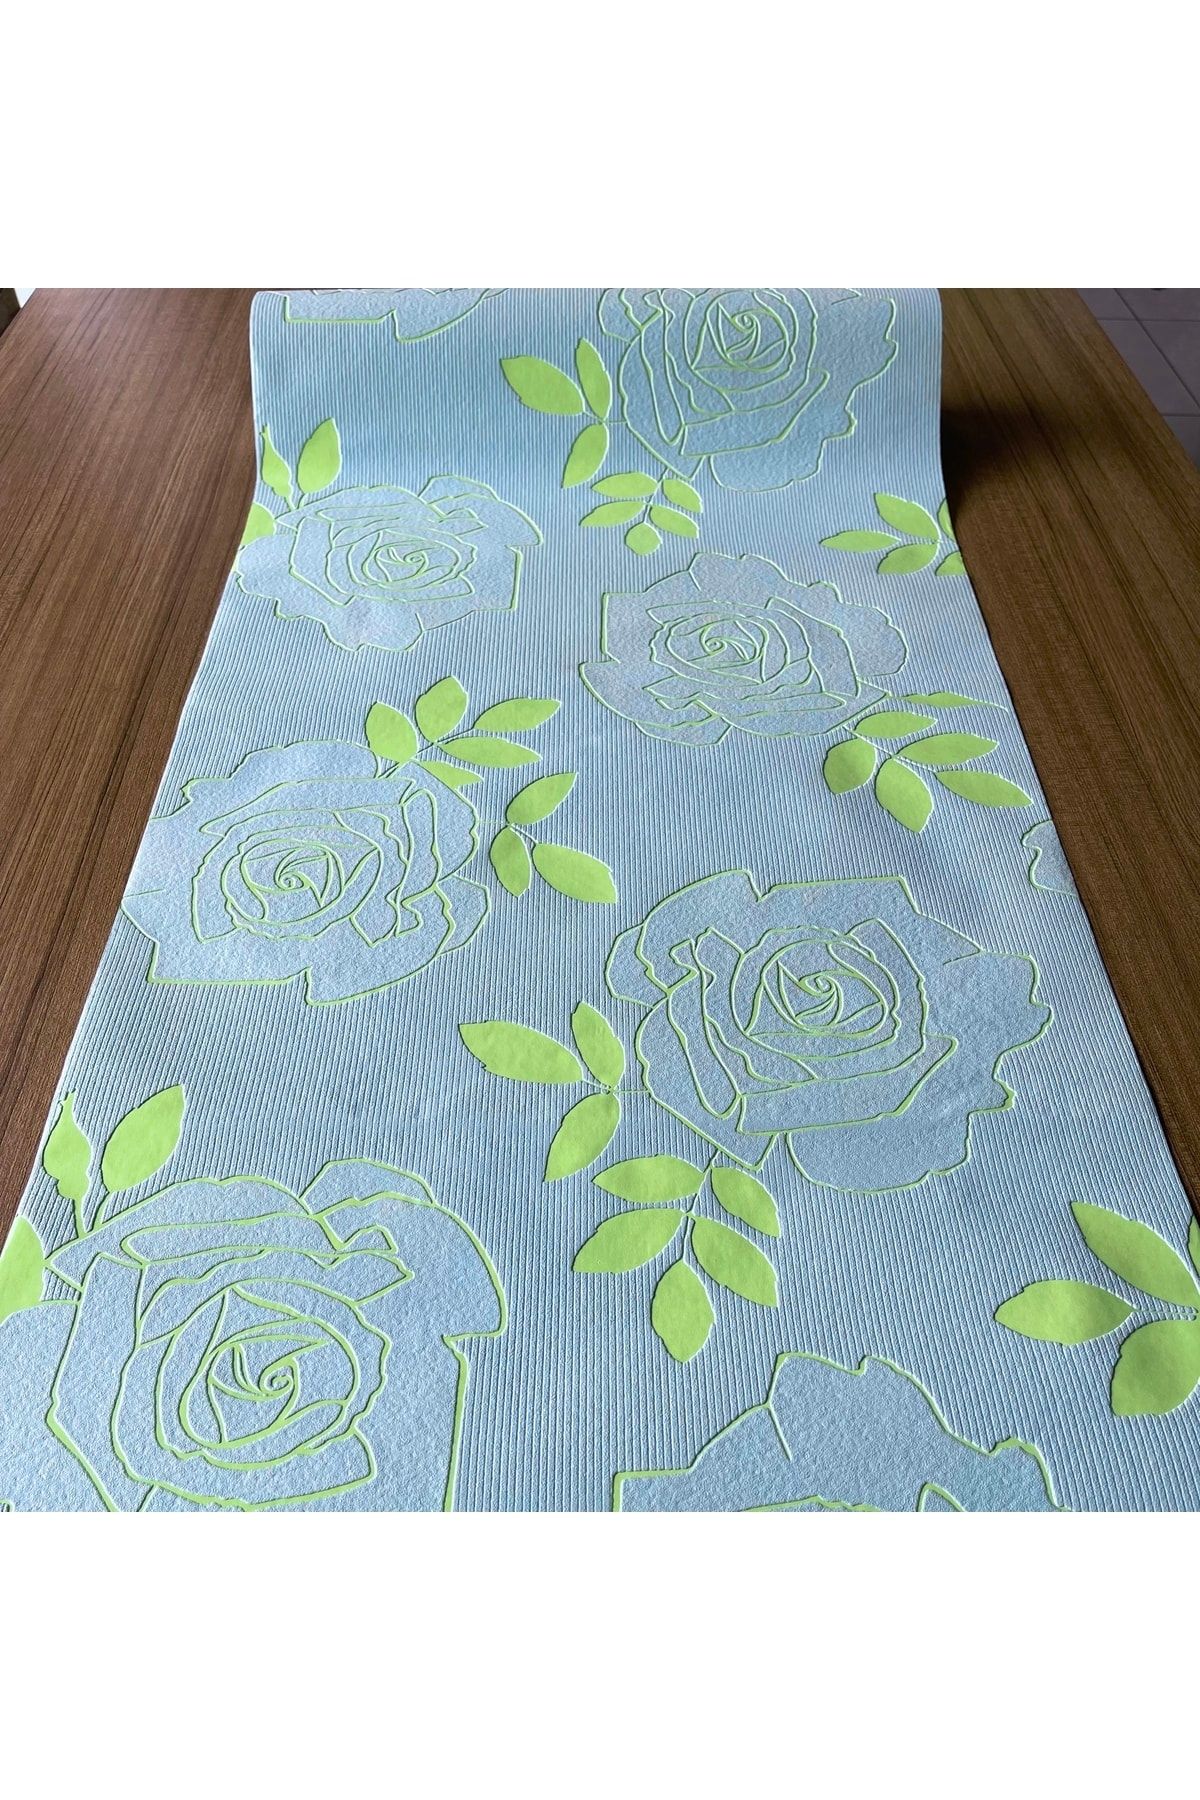 BAŞYAPI DİZAYN Mavi Zemin Üzeri Yeşil Çiçekli Ithal Duvar Kağıdı (5m²)